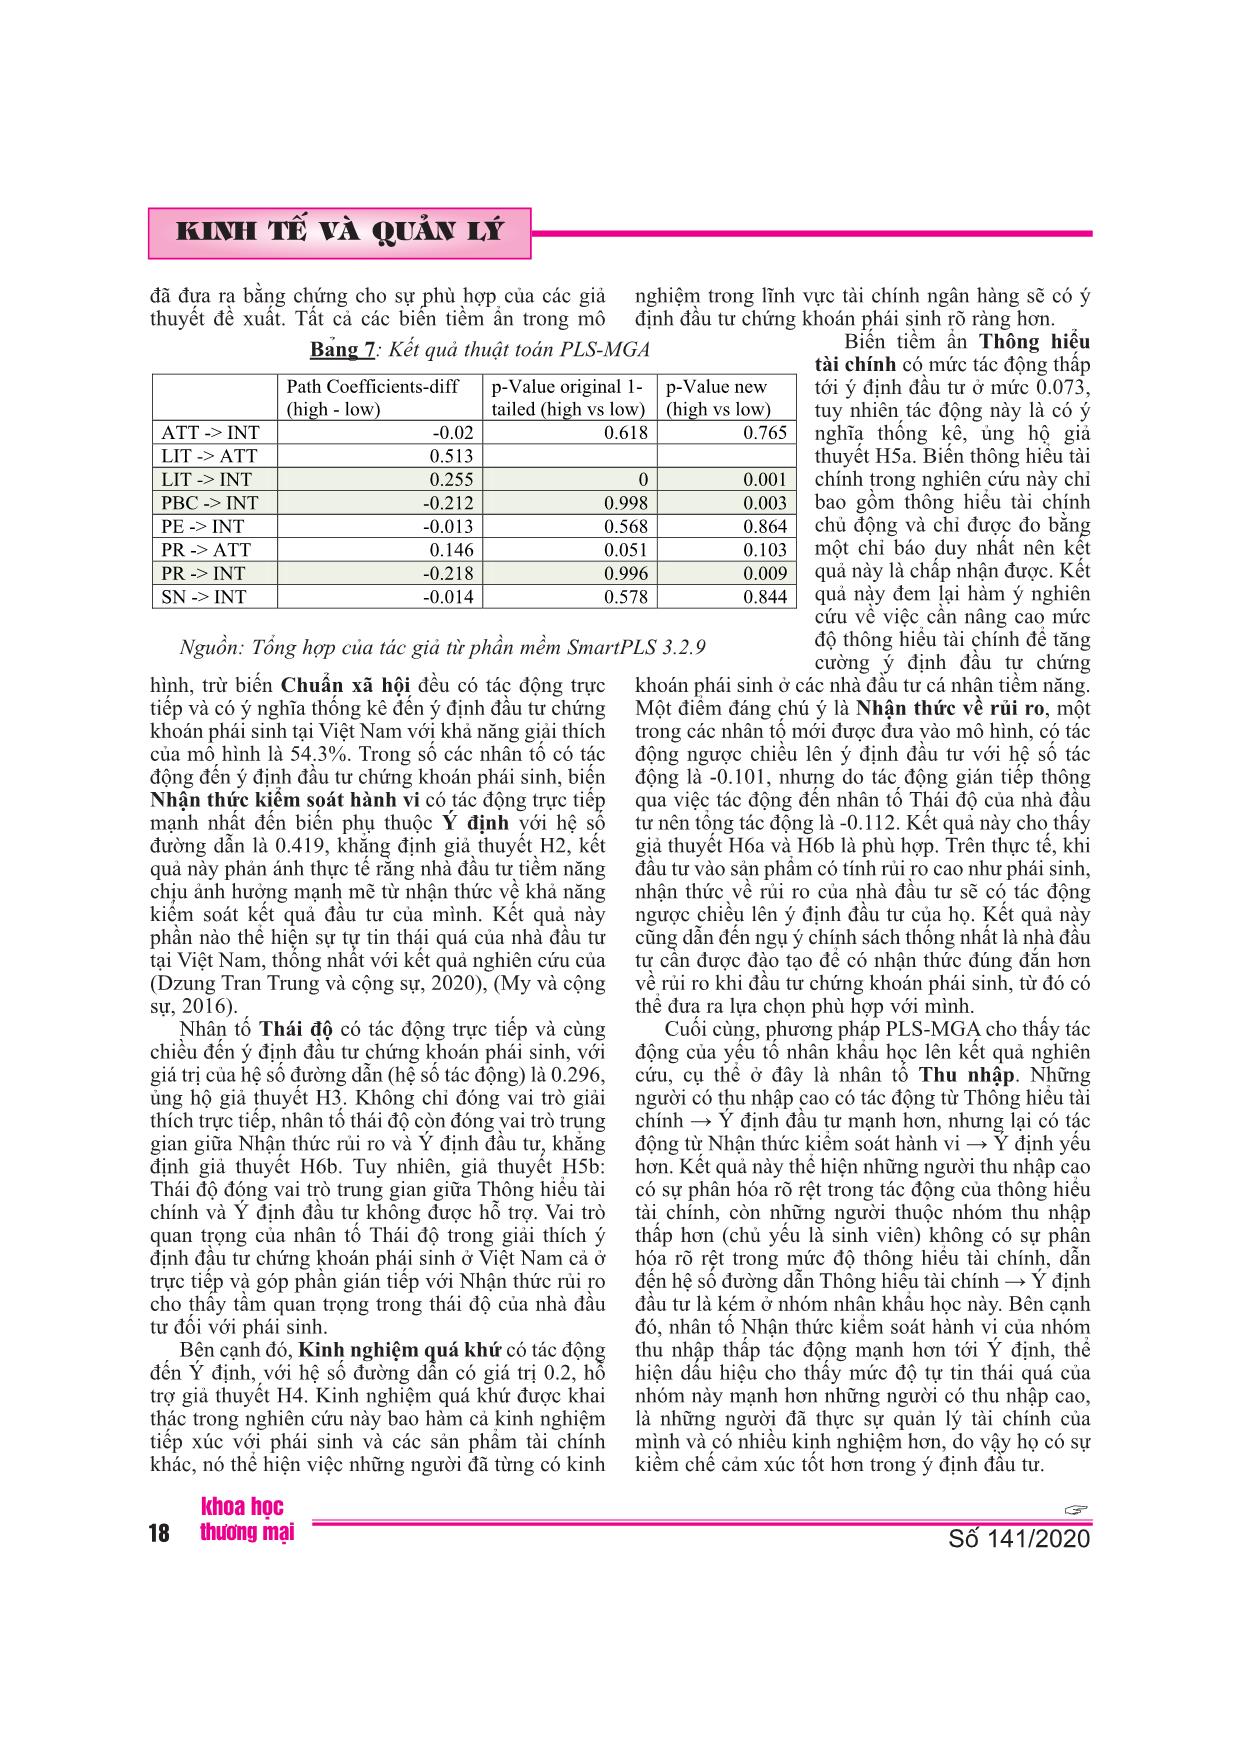 Các nhân tố tác động tới ý định đầu tư chứng khoán phái sinh của nhà đầu tư cá nhân: trường hợp nghiên cứu tại Việt Nam trang 9